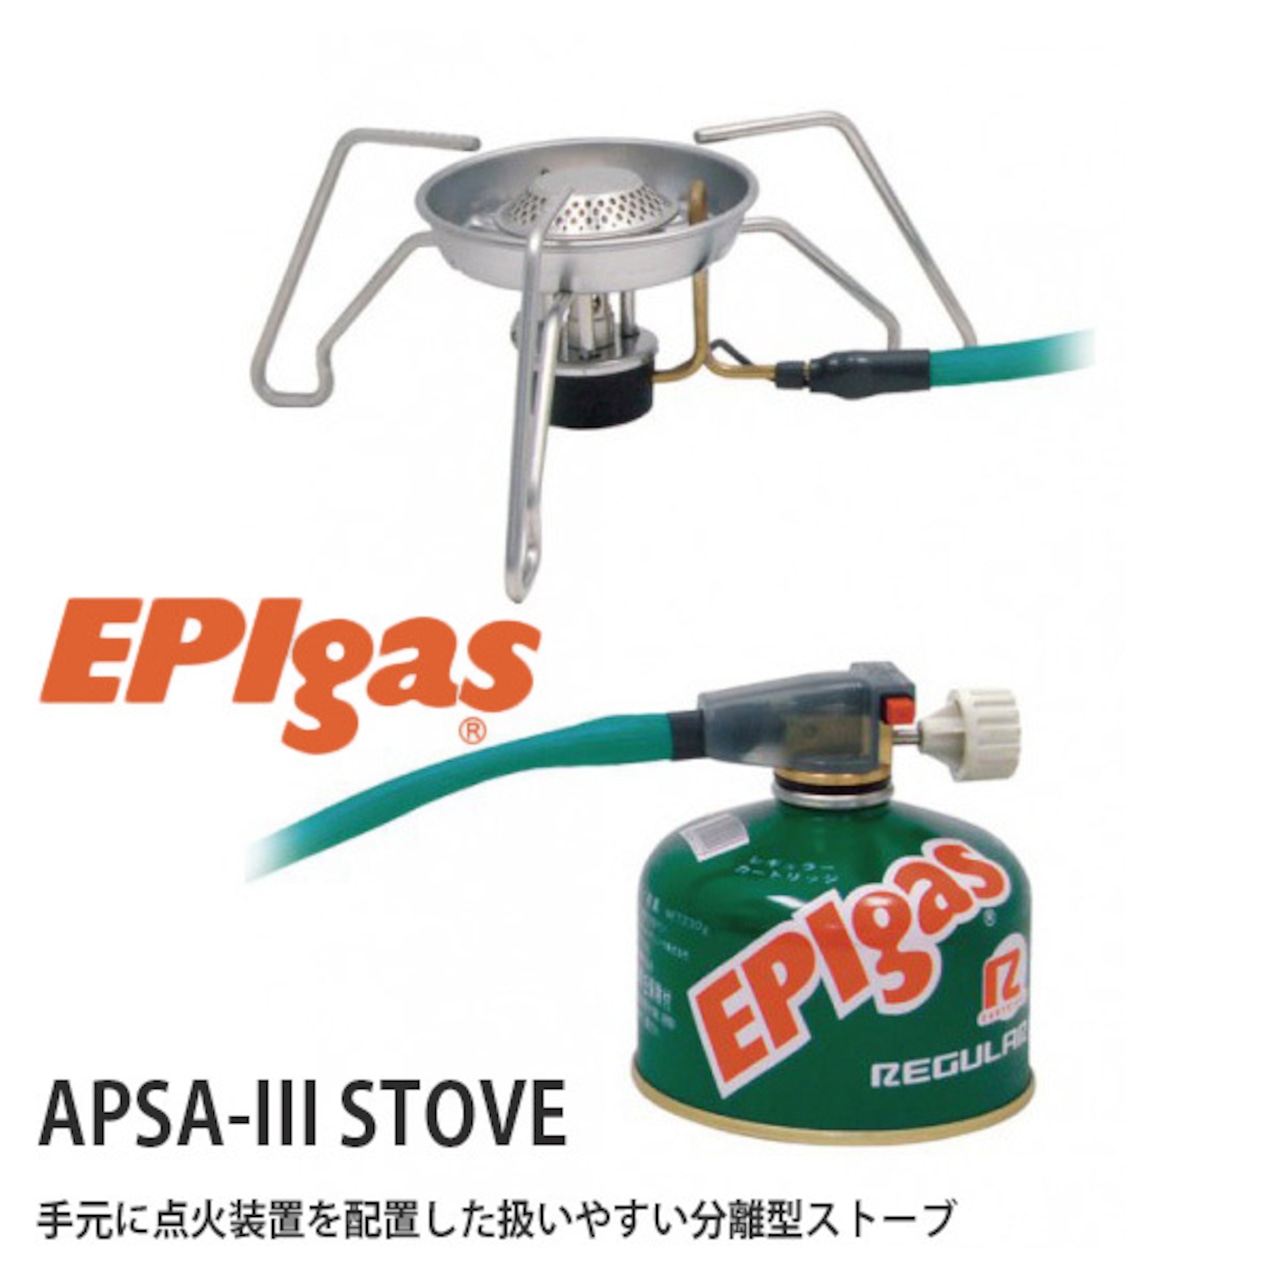 EPIgas(イーピーアイ ガス) APSA-III STOVE ストーブ 小型 ガスバーナー コンロ ゴトク 携帯